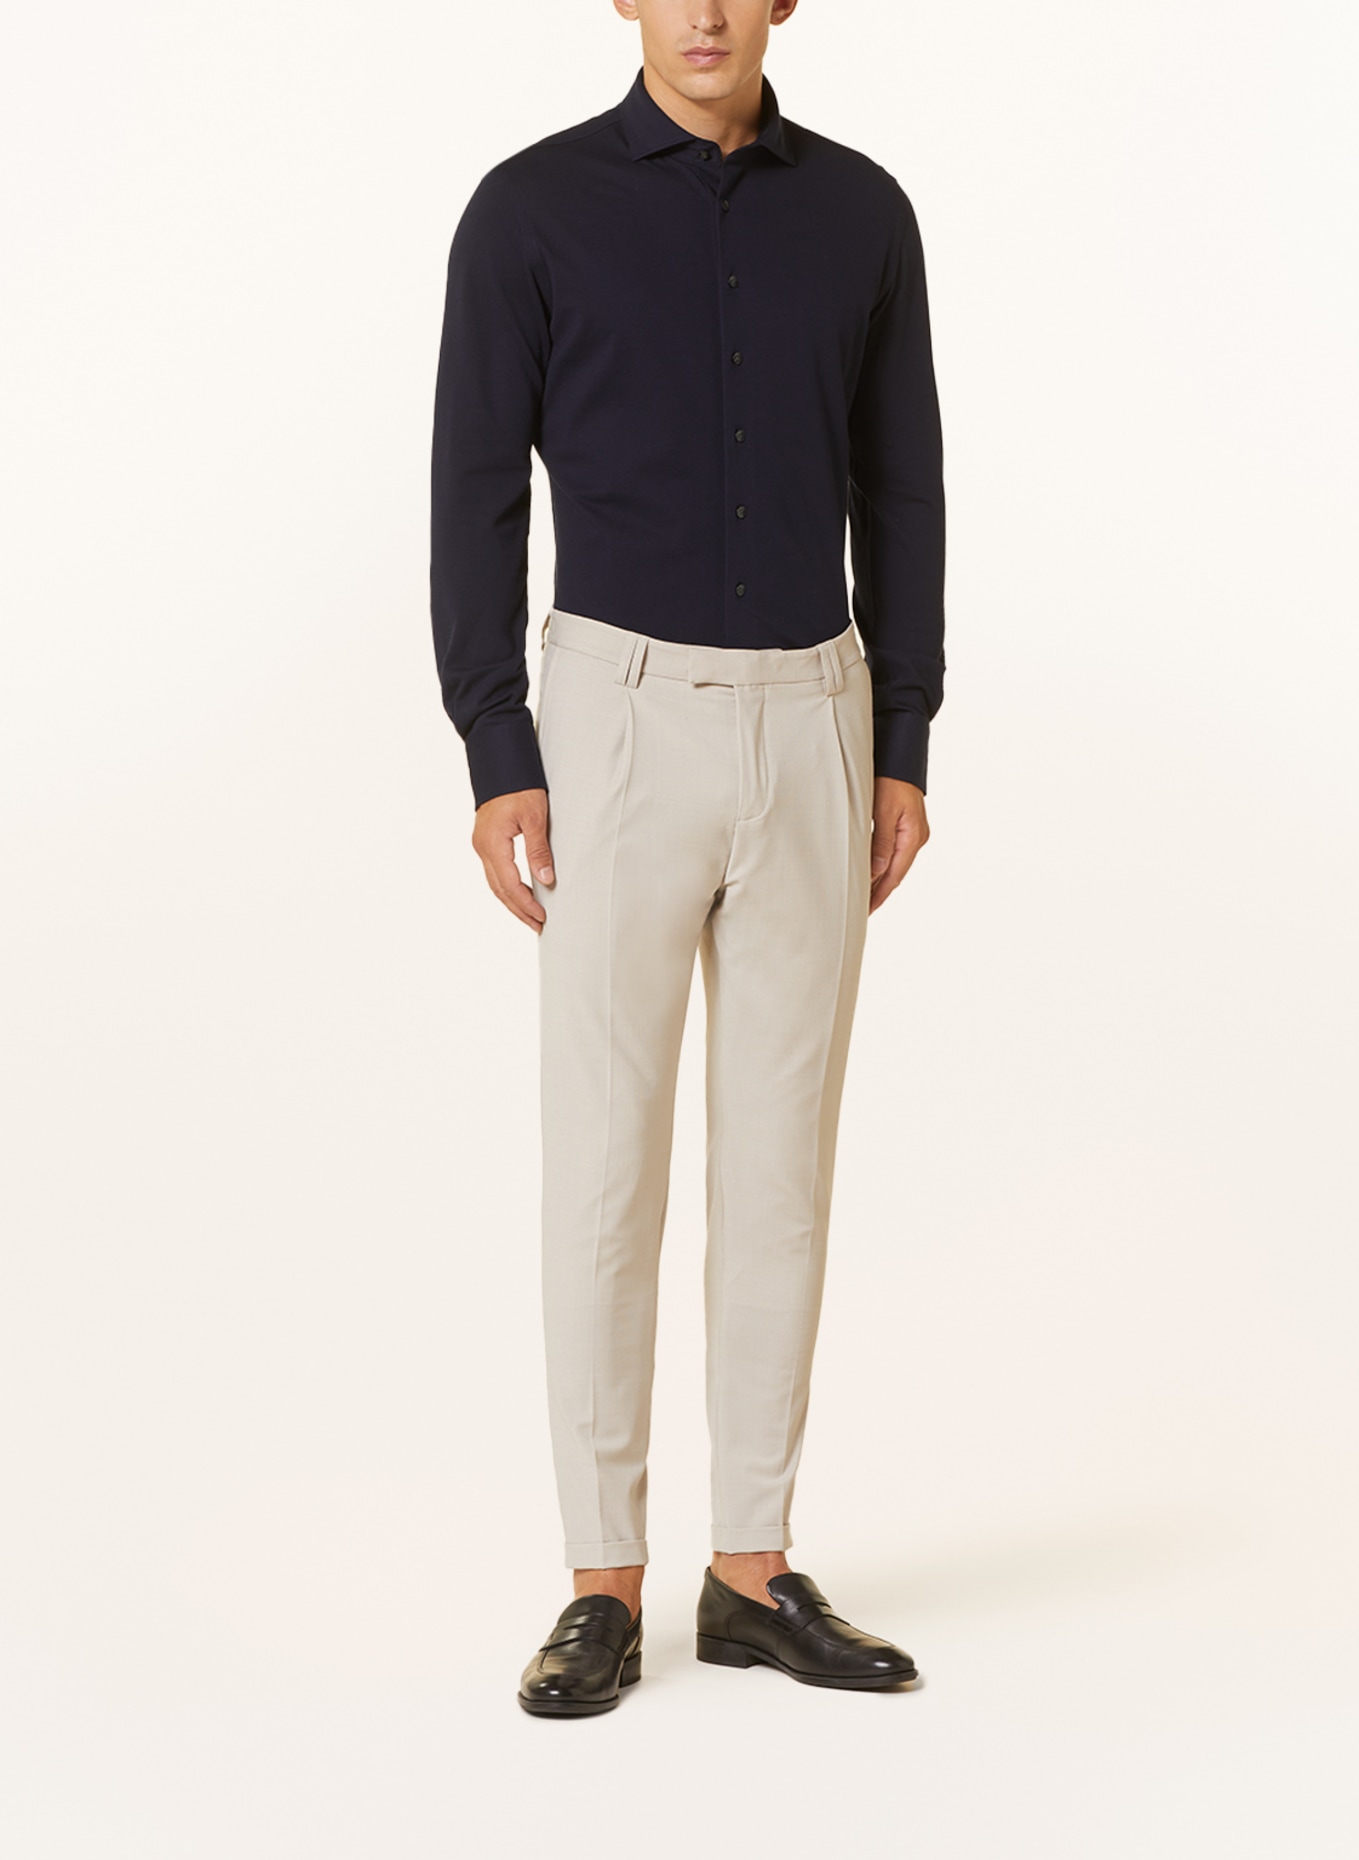 PROFUOMO Piqué-Hemd Slim Fit, Farbe: DUNKELBLAU (Bild 2)